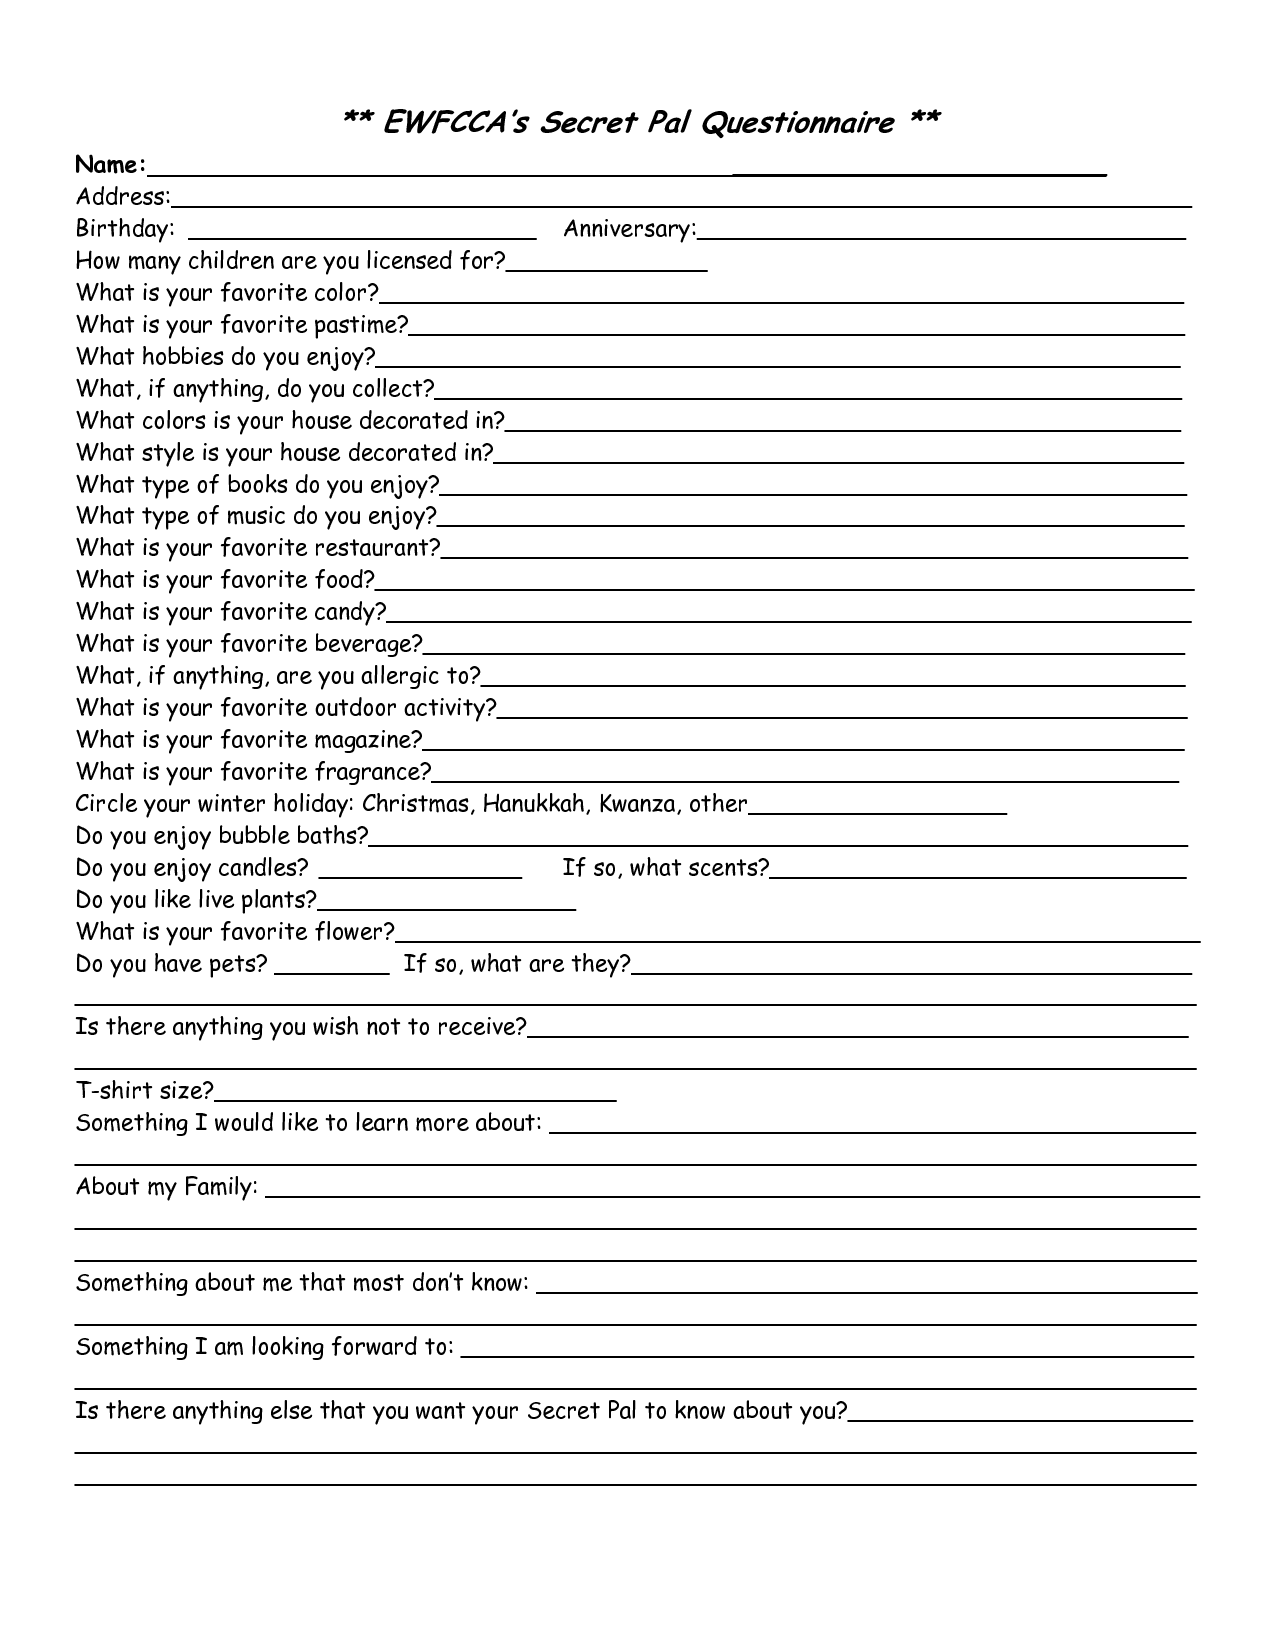 Secret Pal Questionnaire Form